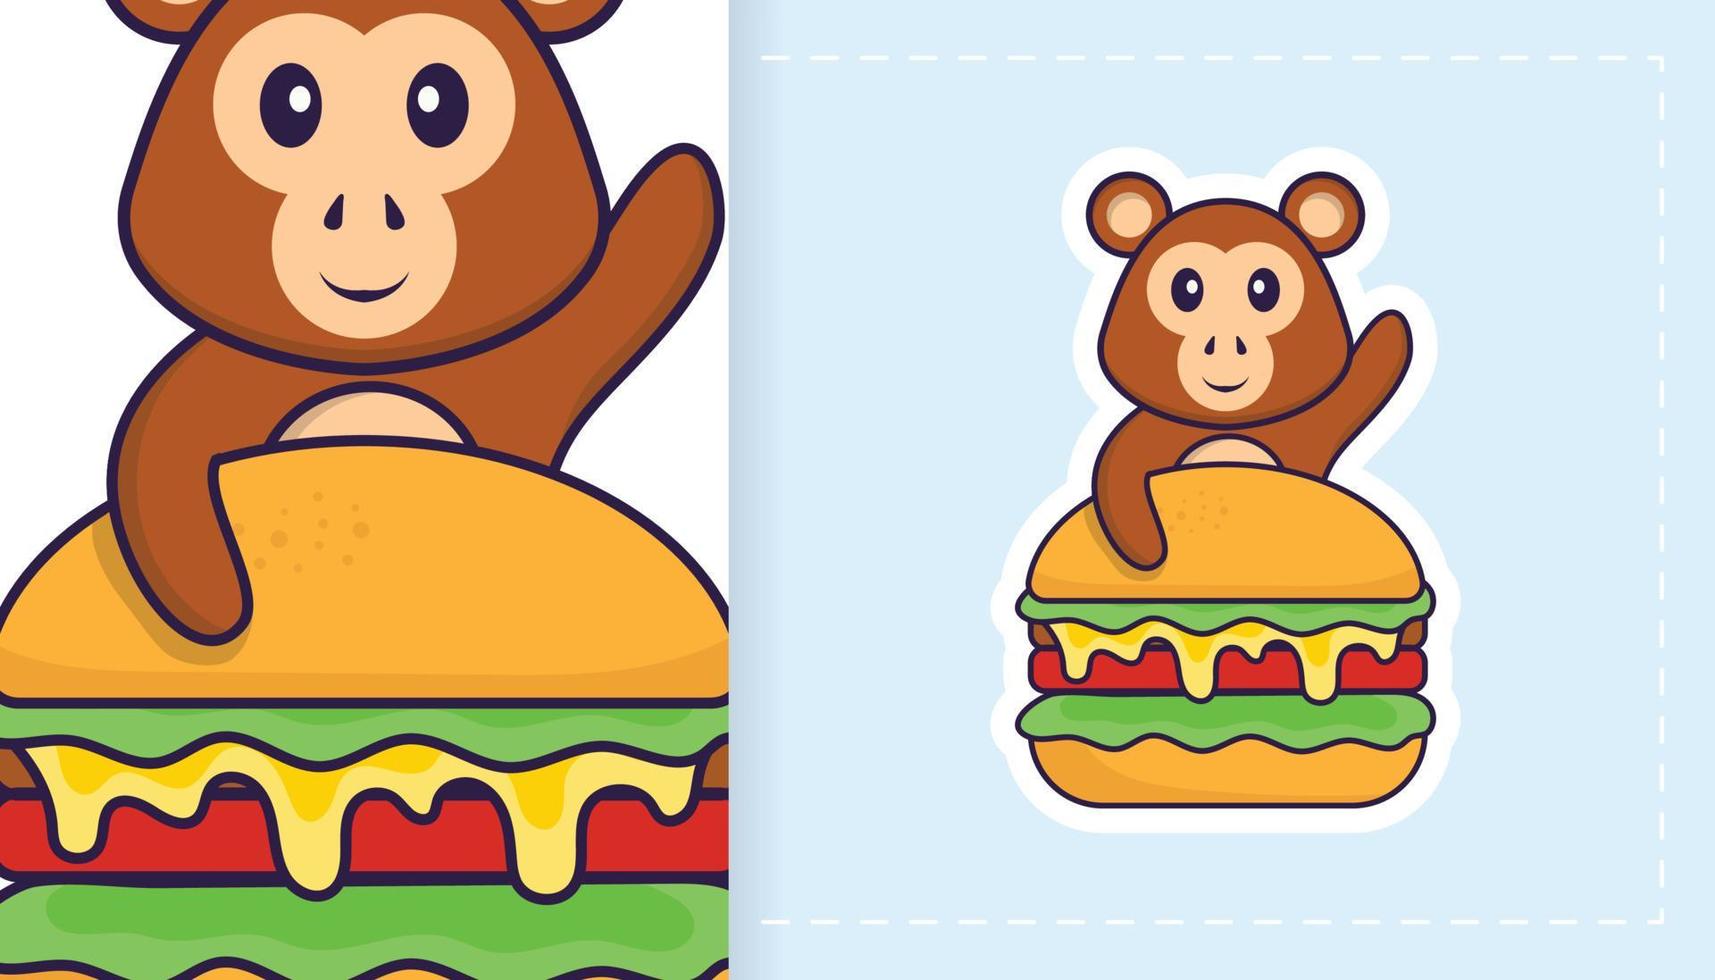 simpatico personaggio mascotte scimmia. può essere utilizzato per adesivi, toppe, tessuti, carta. illustrazione vettoriale